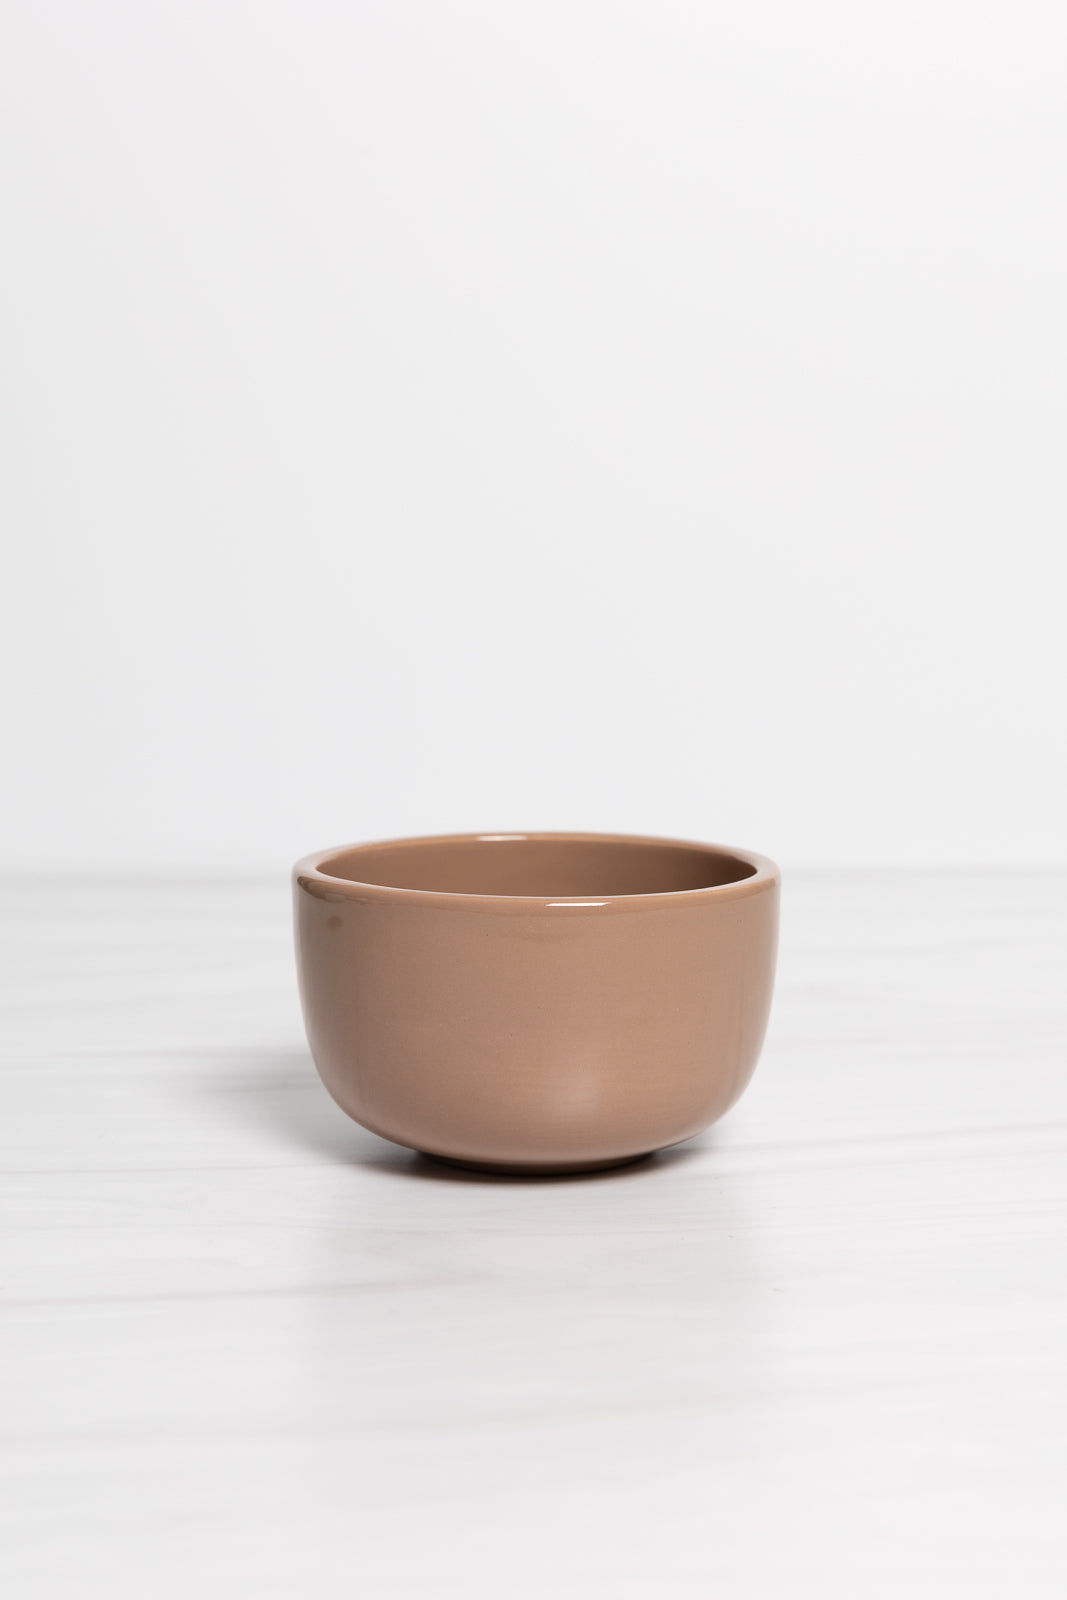 Ceramic Beauty Bowls